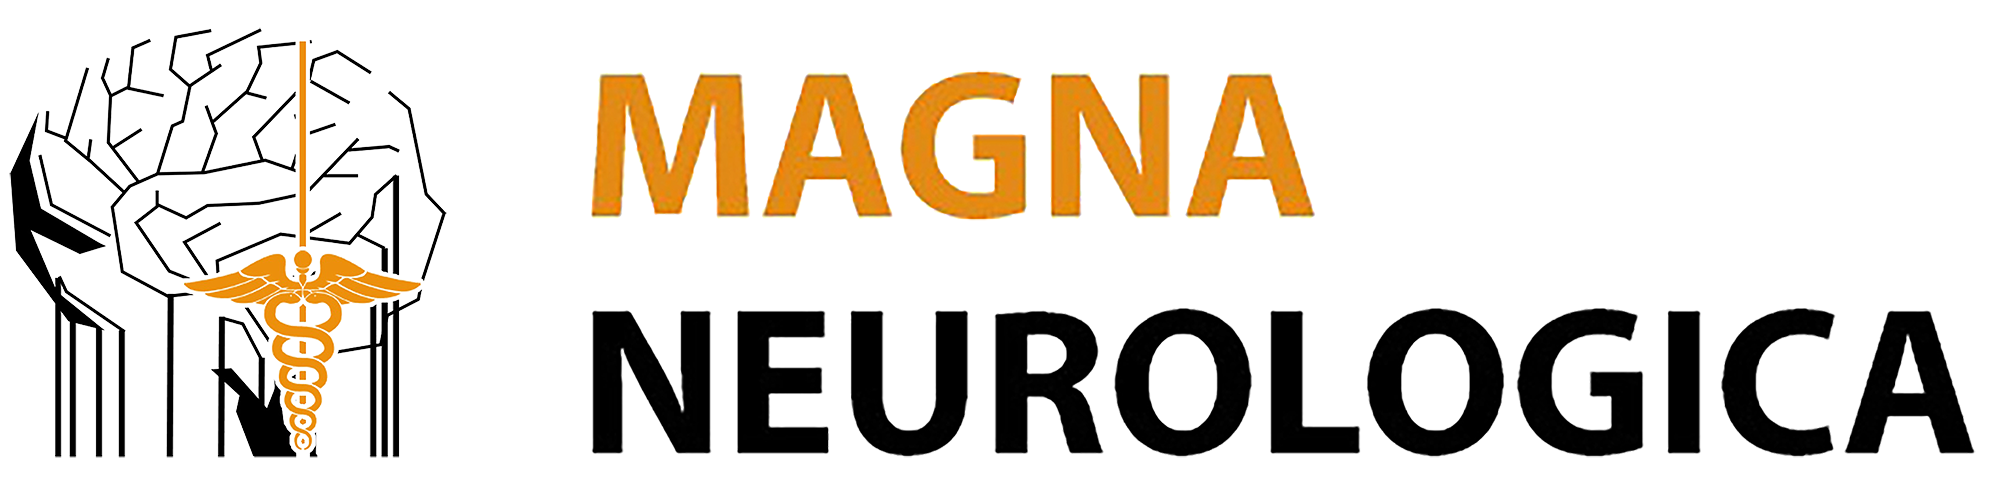 Magna Neurologica